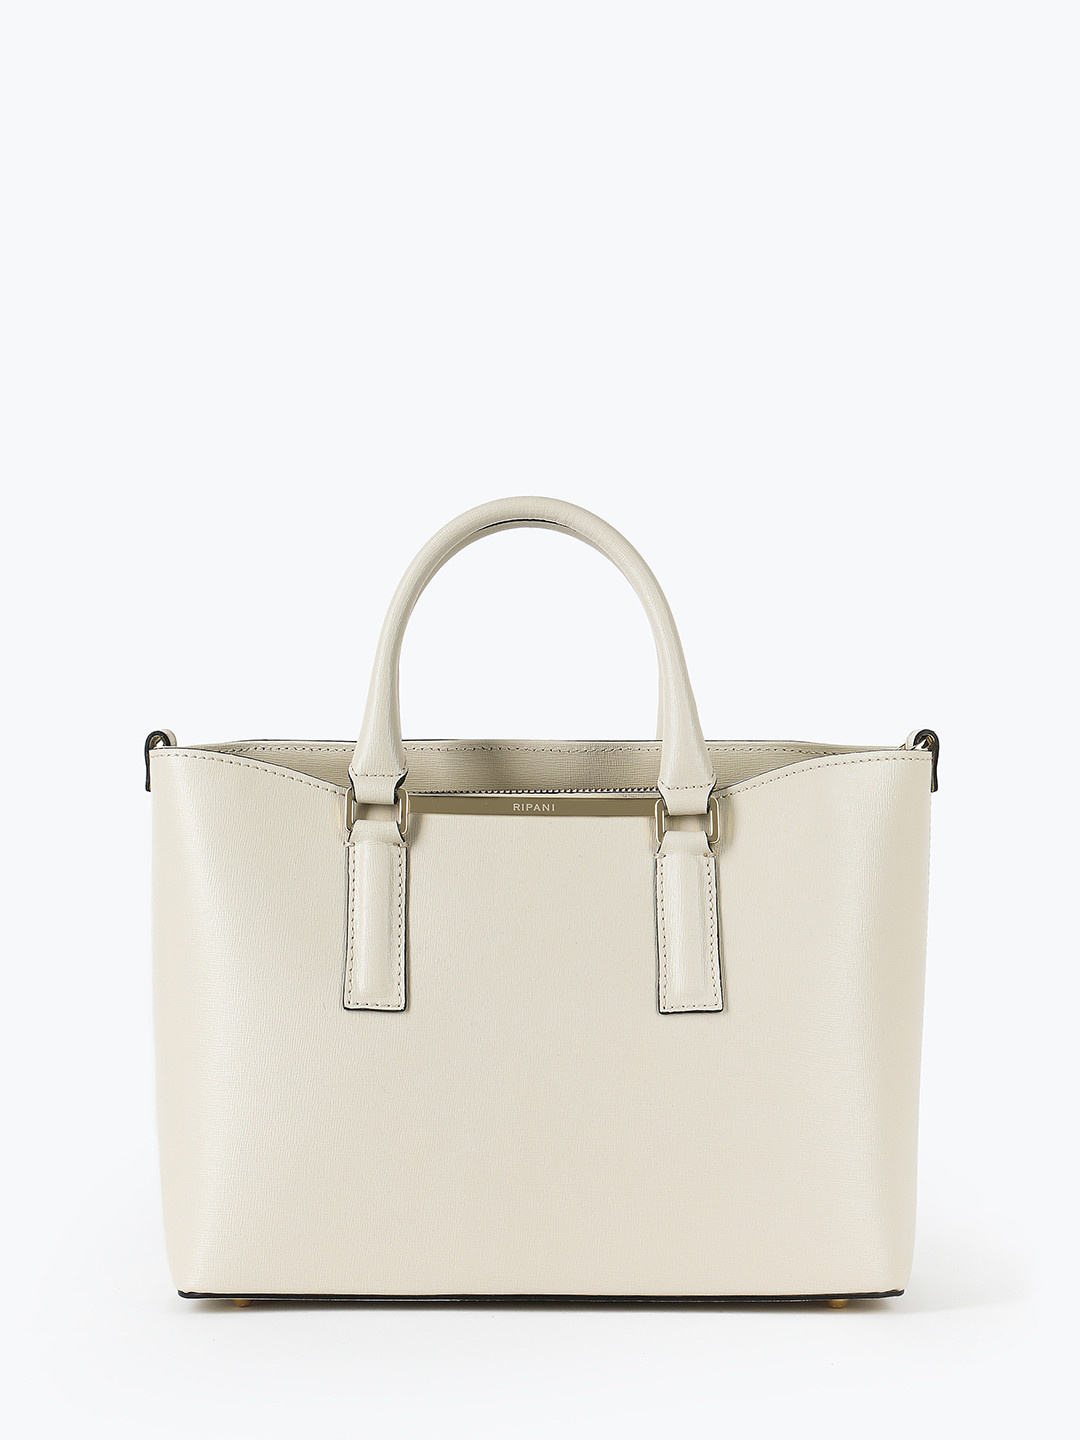 Фото Женская сумка-тоут из натуральной кожи сафьяно кремового оттенка Классические сумки